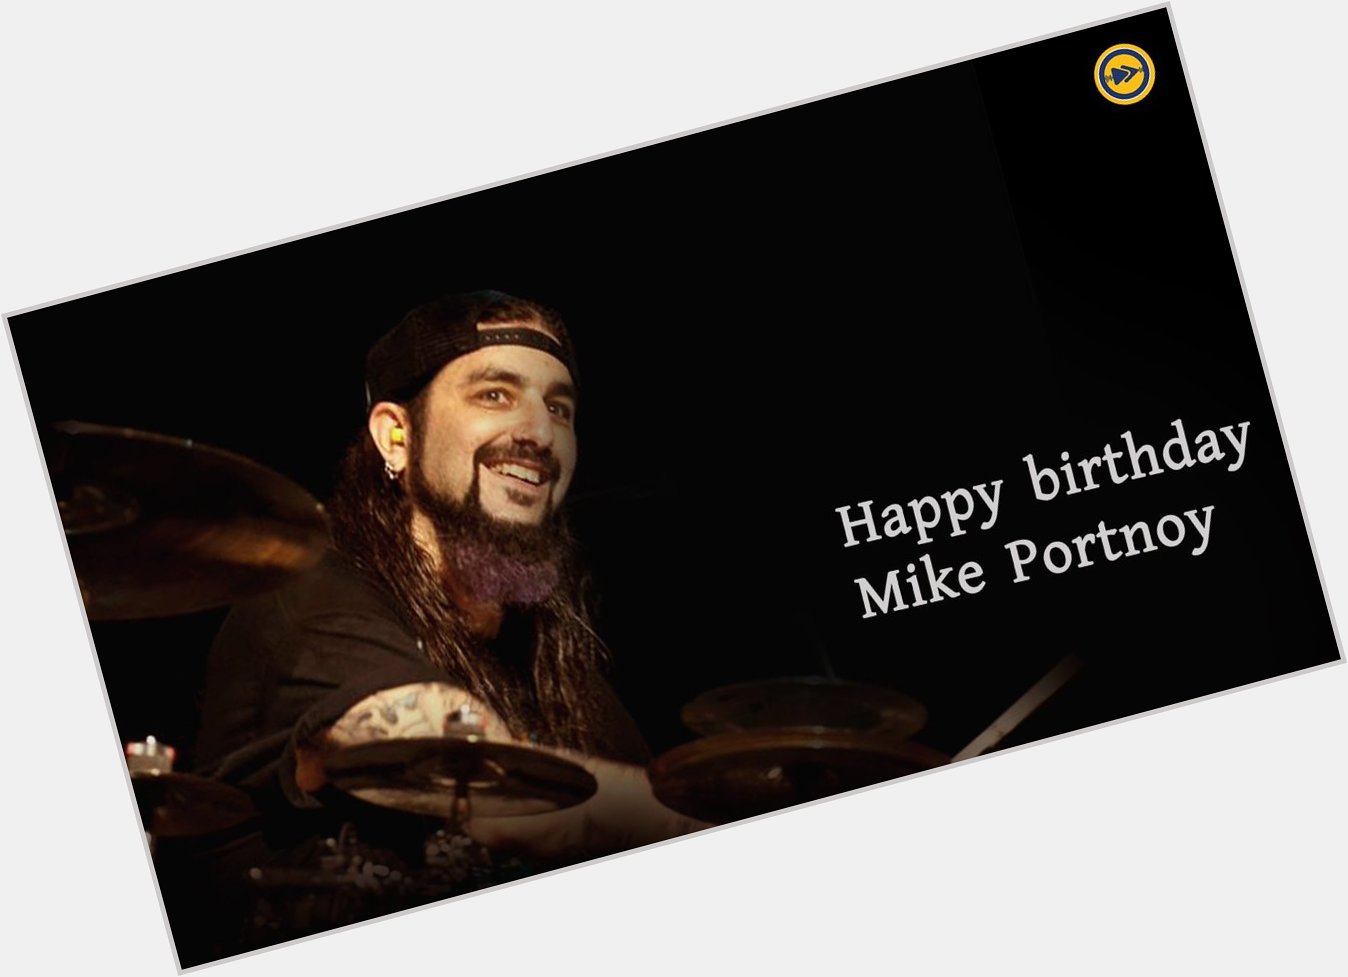 Happy birthday to Mike Portnoy!!!   